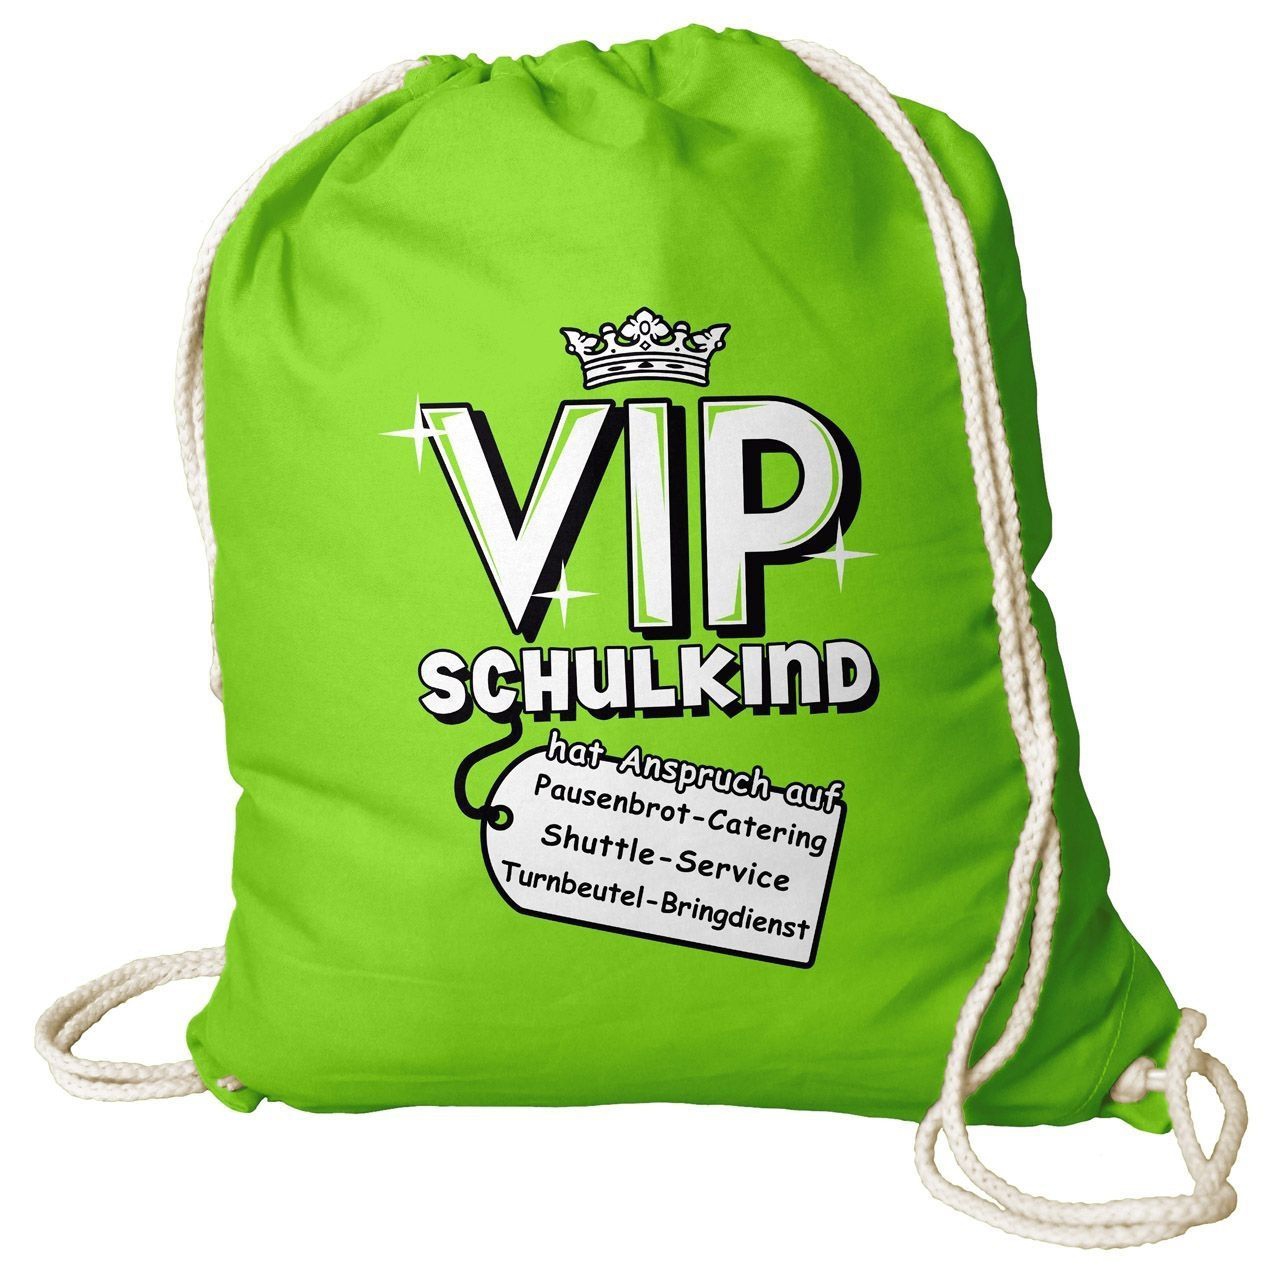 VIP Schulkind Rucksack Beutel hellgrün